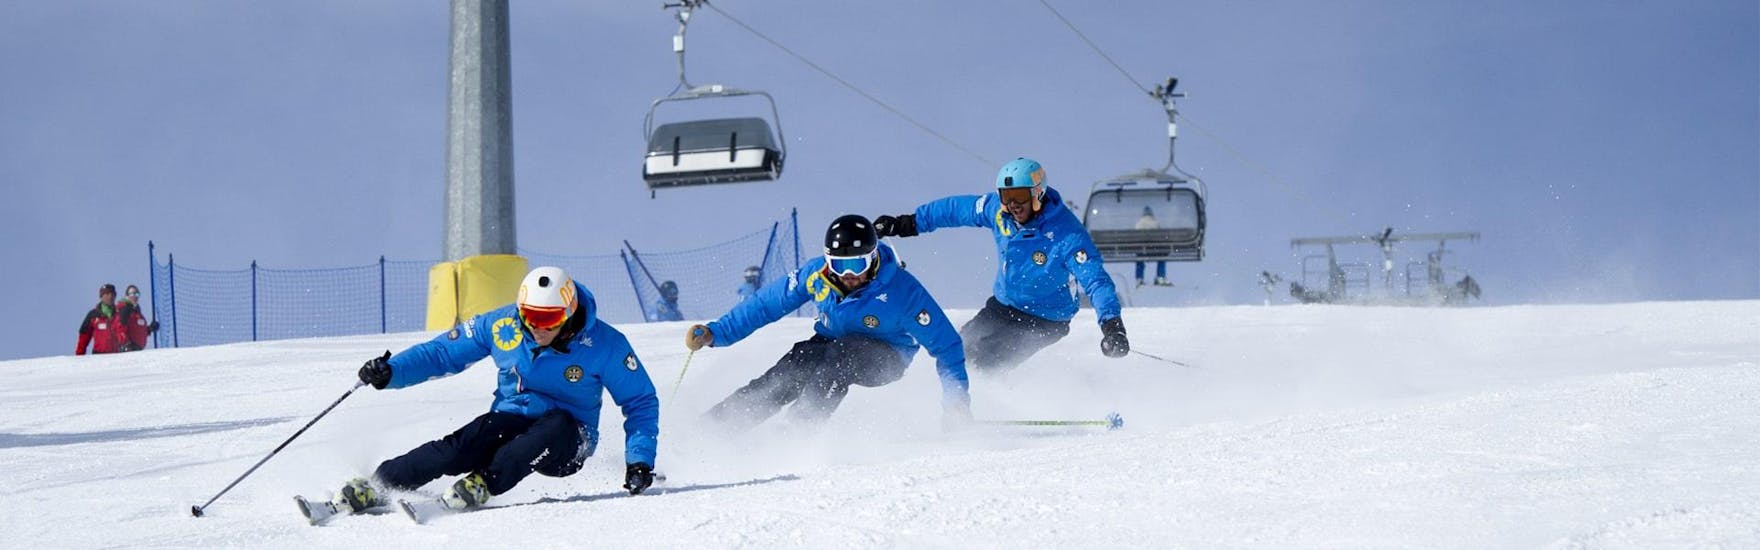 Drie ski-instructeurs van de skischool Scuola di Sci Azzurra Livigno skiën naar benden van de skipiste in een formatie. Dit doen ze tijdens een van de skilessen voor Volwassenen - Alle Niveaus. Hiermee demonstreren ze de juiste skitechniek.